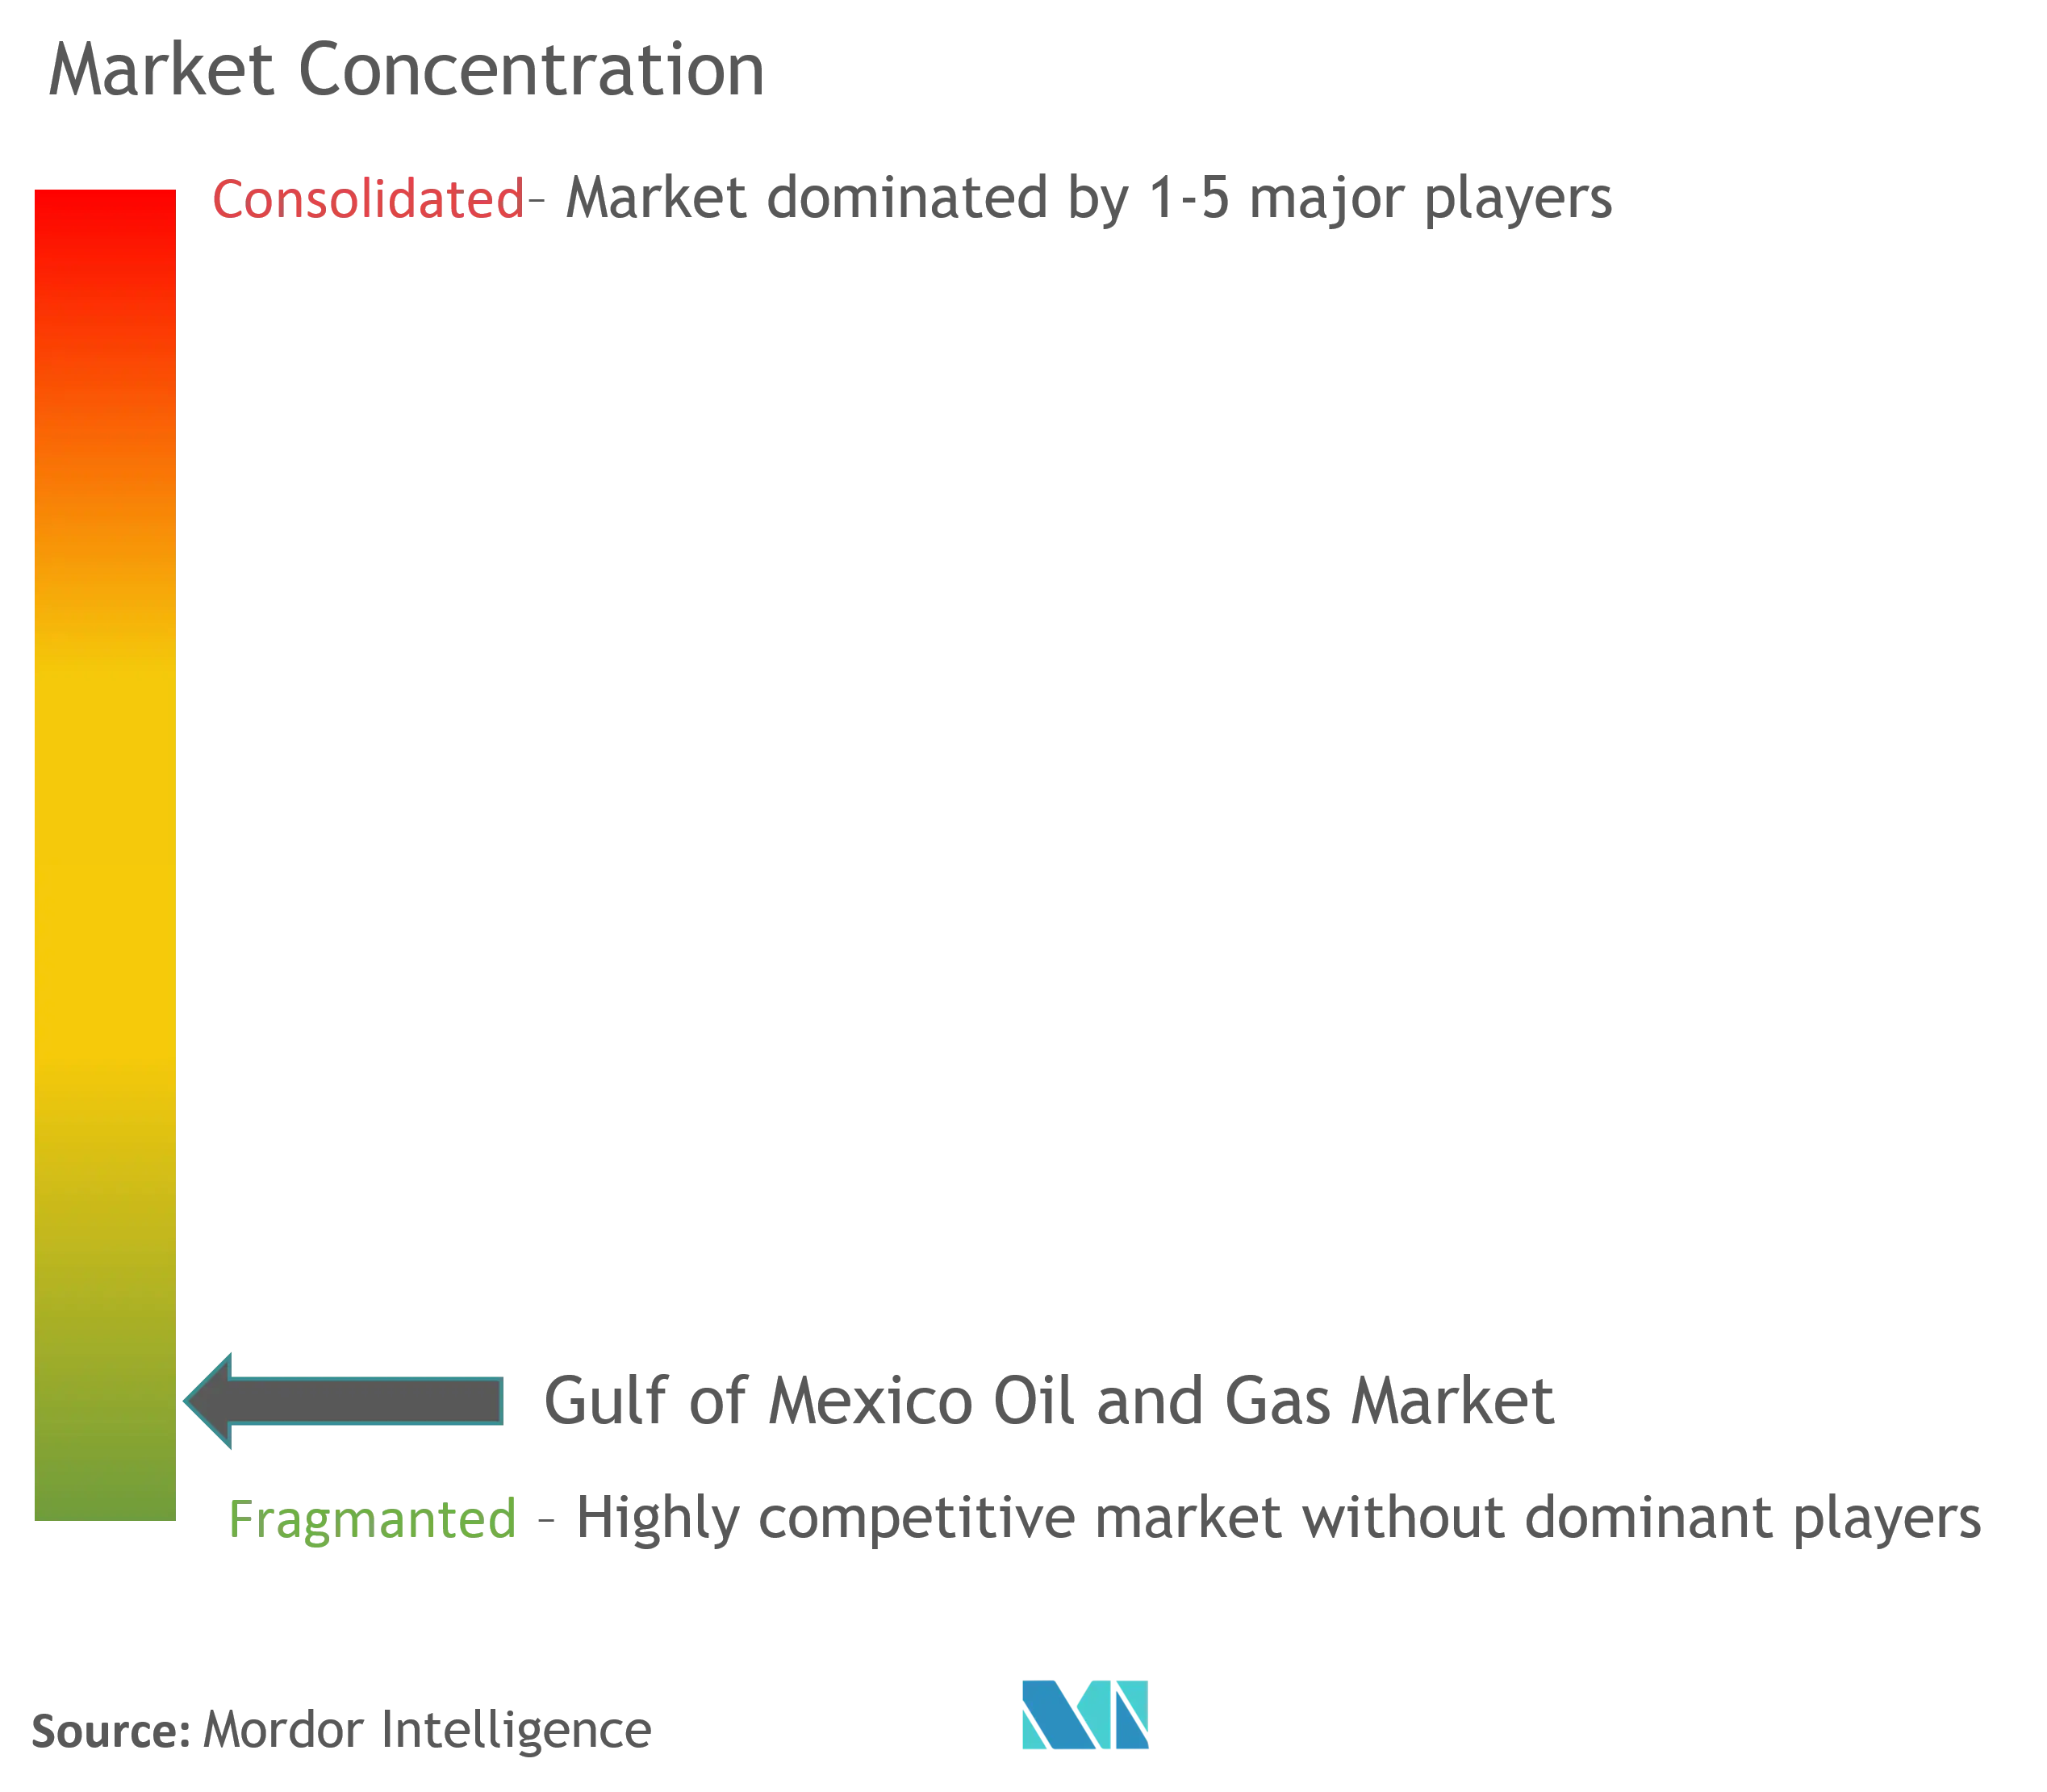 Концентрация рынка нефти и газа в Мексиканском заливе